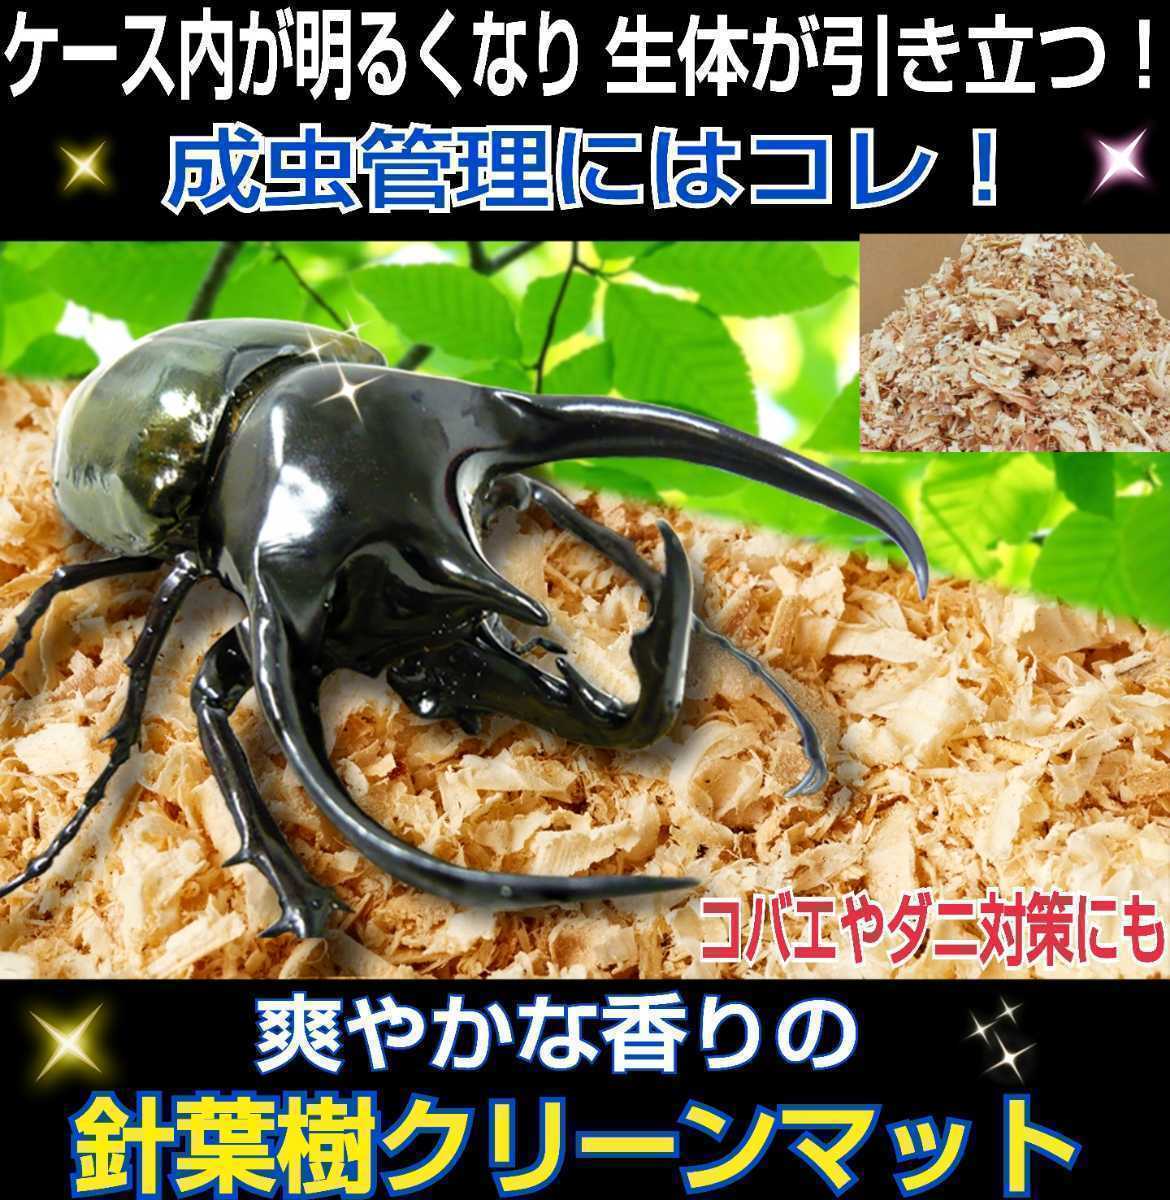 ☆大人気商品☆ 昆虫ゼリー プロゼリー50 クワガタ カブトムシ